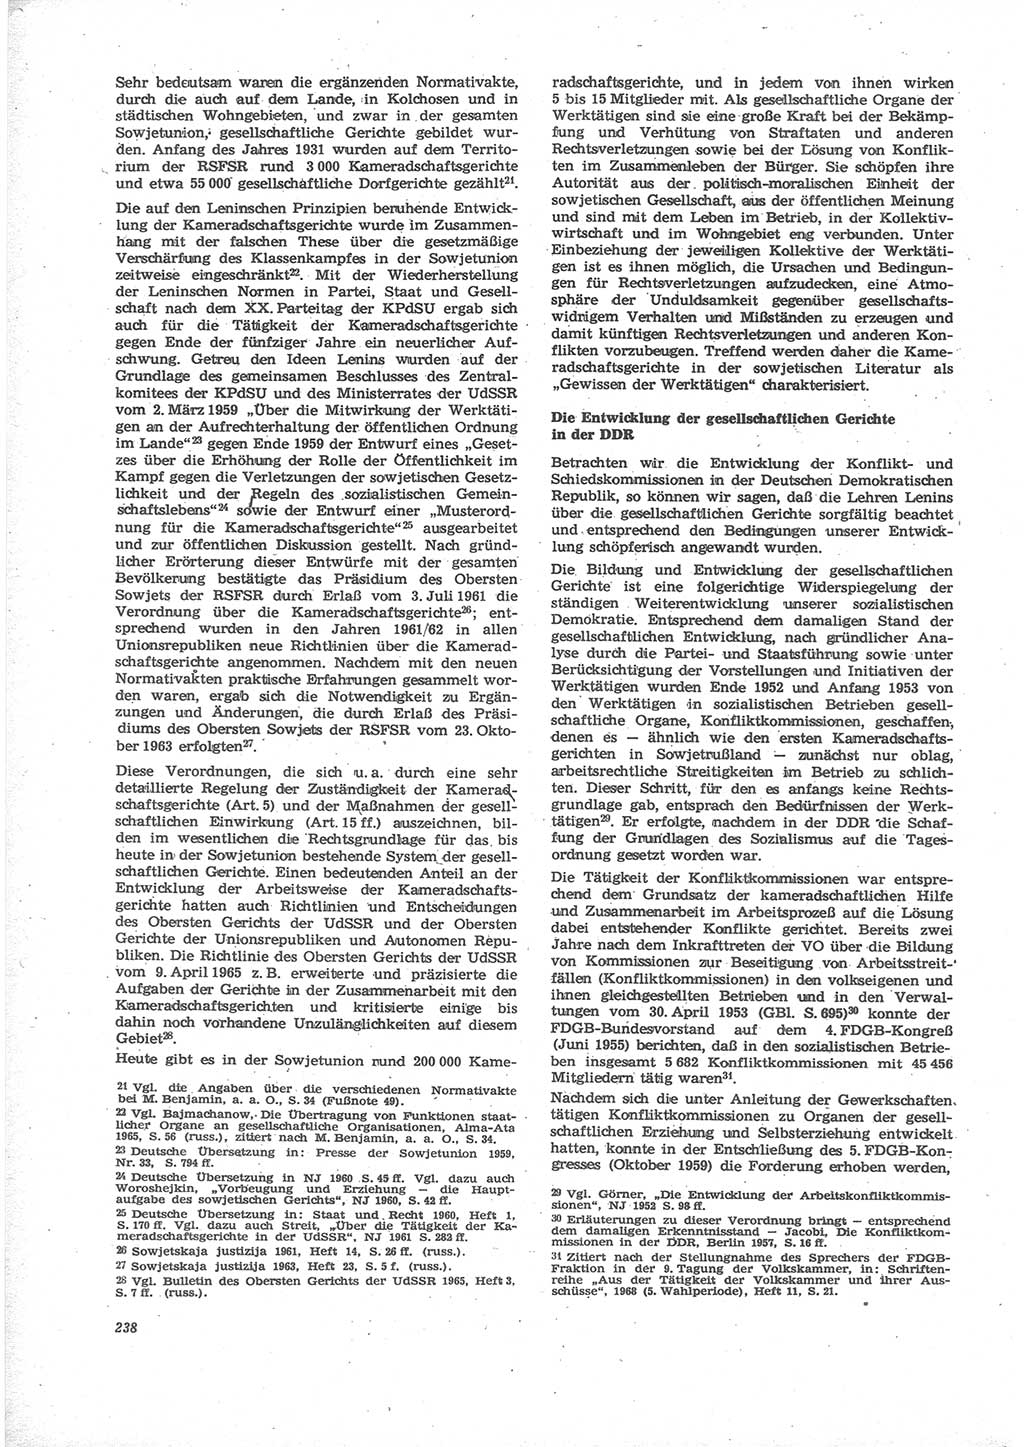 Neue Justiz (NJ), Zeitschrift für Recht und Rechtswissenschaft [Deutsche Demokratische Republik (DDR)], 24. Jahrgang 1970, Seite 238 (NJ DDR 1970, S. 238)